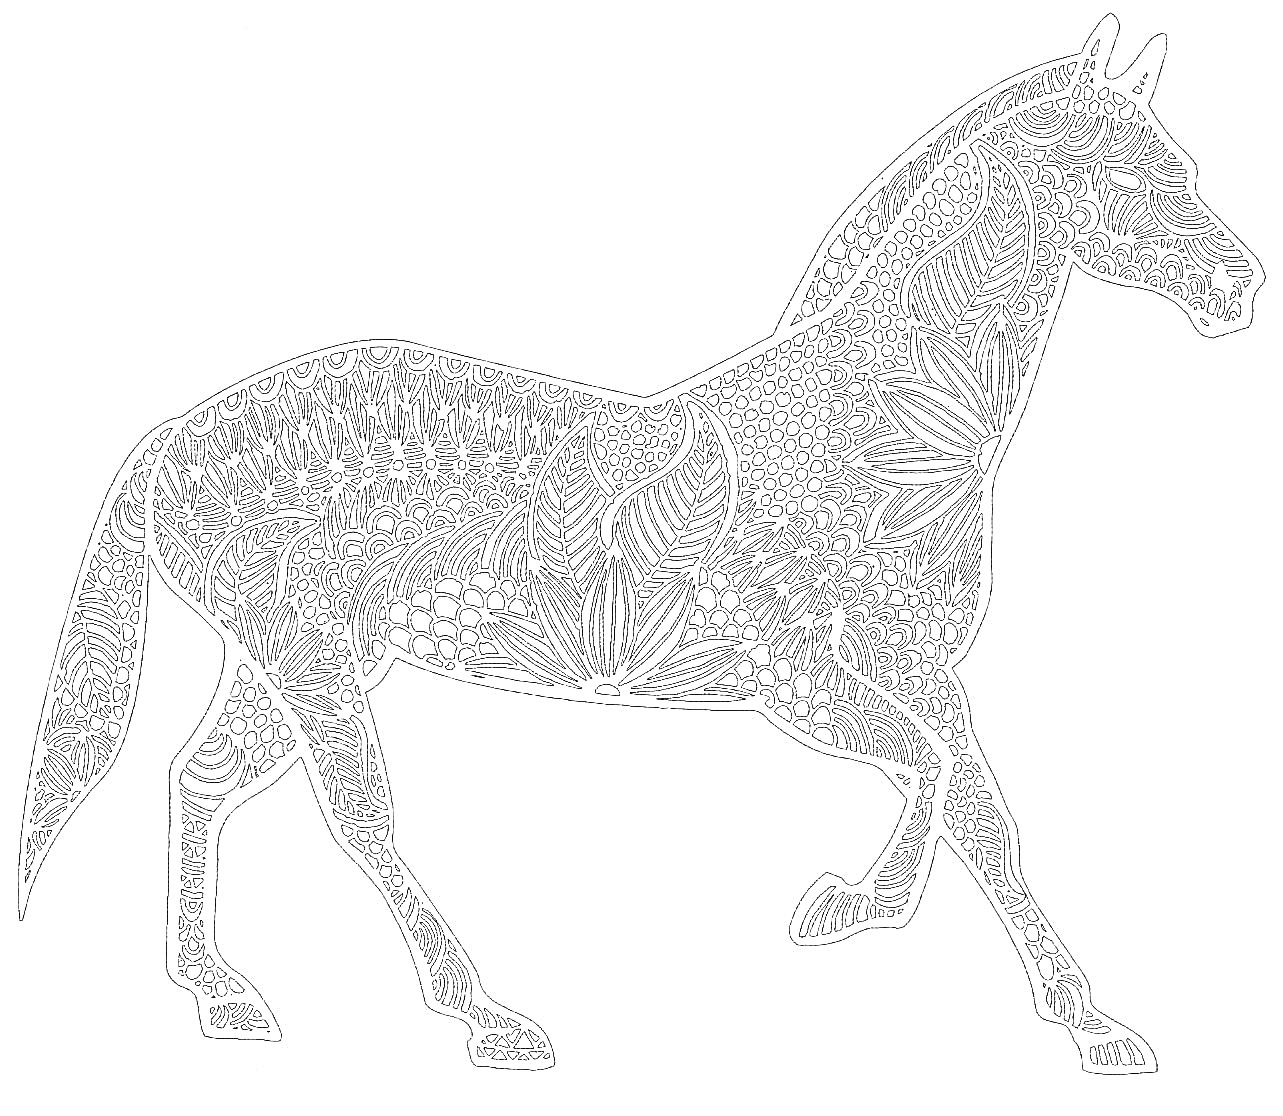 Раскраска Антистресс раскраска с лошадью, покрытая сложным растительным орнаментом